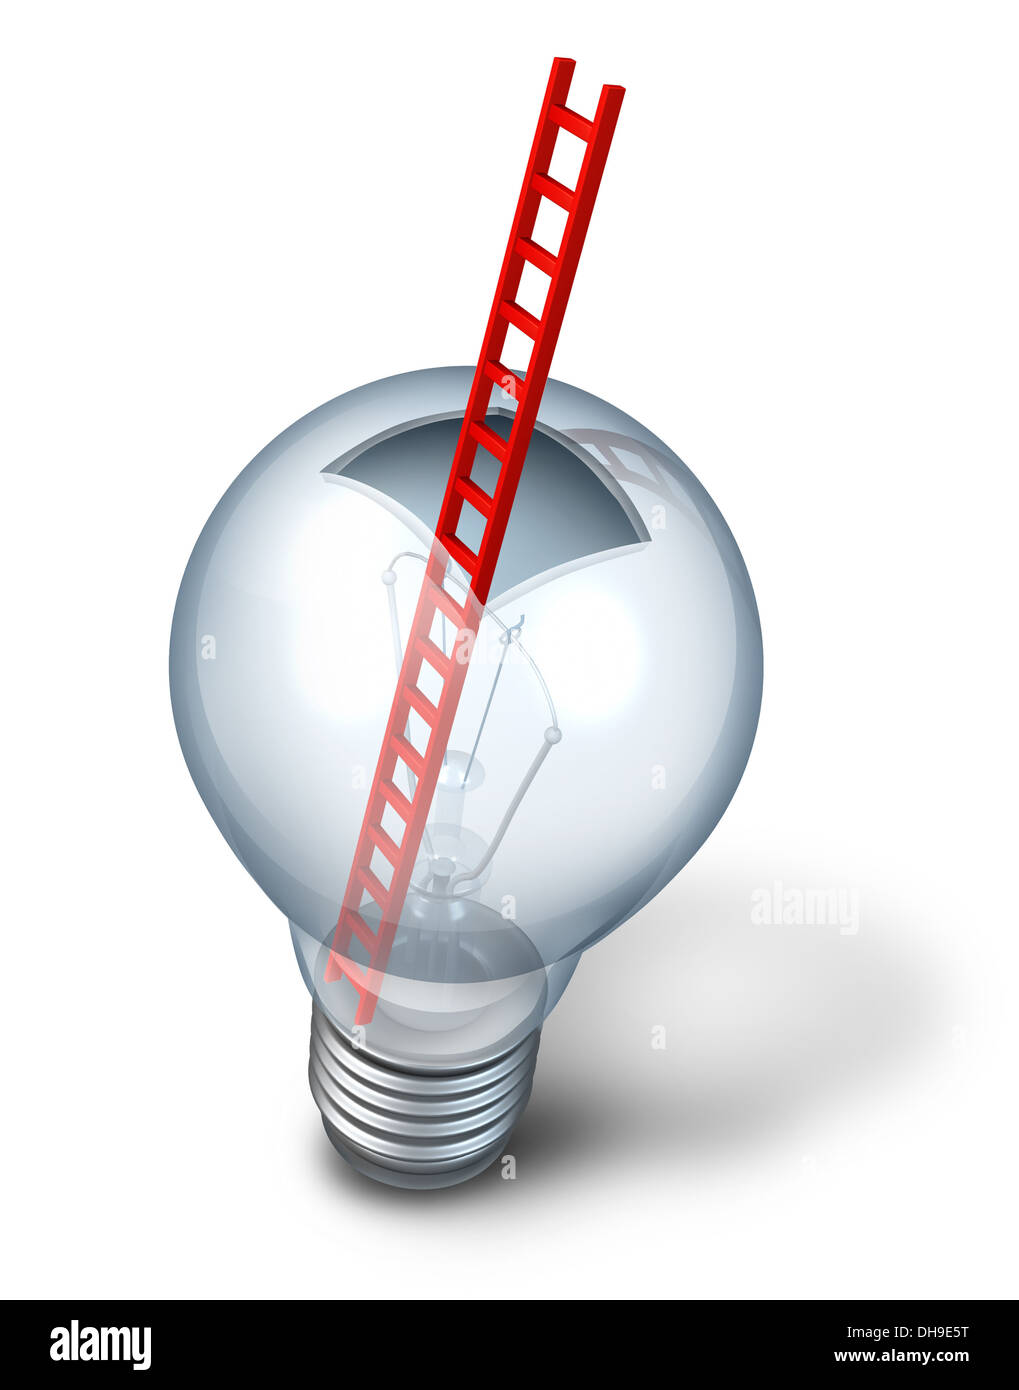 Accesso creativo come aprire il vetro della lampadina della luce con una scala rossa all'interno come una metafora per pensare al di fuori della casella e creative discovery con entrata al funzionamento interno della innovativa strategia di successo su uno sfondo bianco. Foto Stock